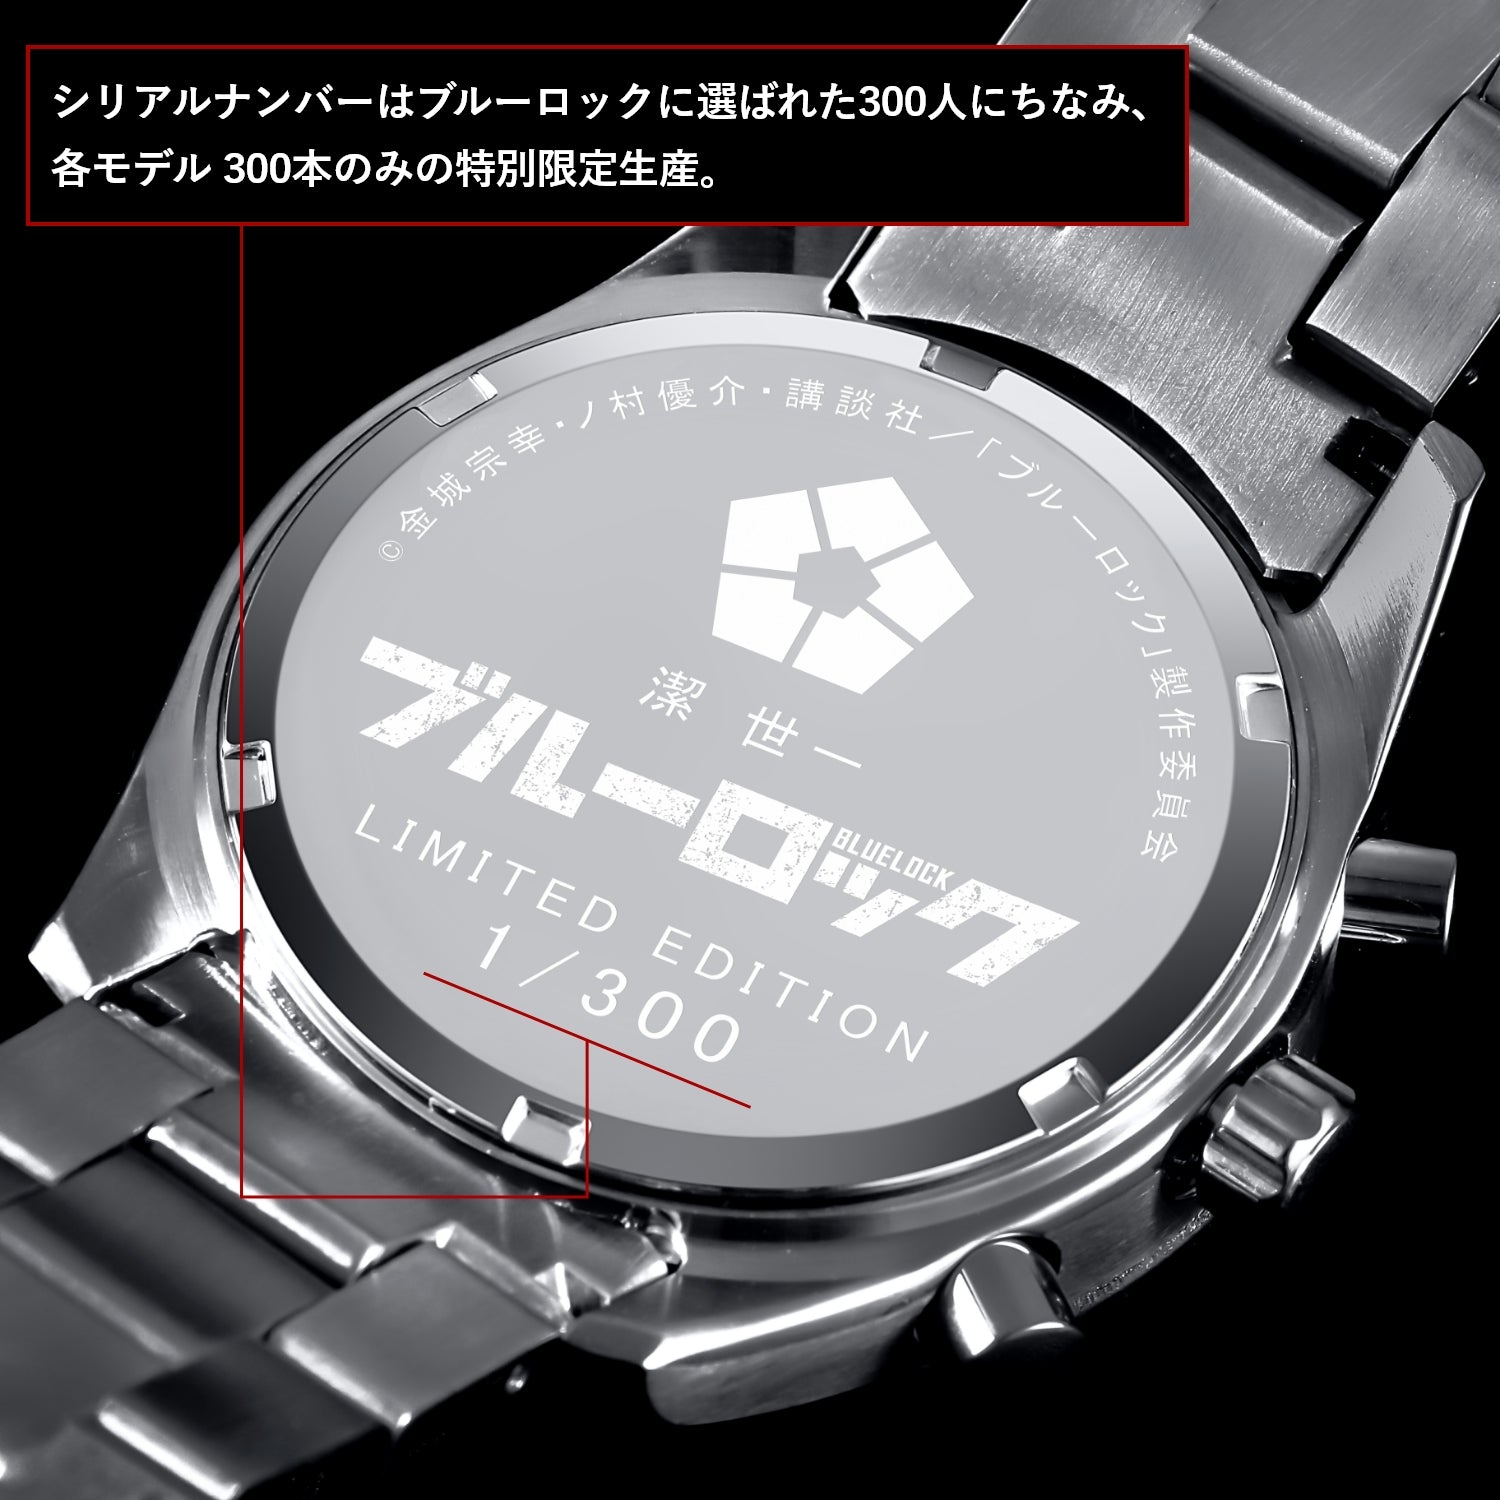 テレビアニメ「ブルーロック」オフィシャルクロノグラフ腕時計 潔 世一 - 公式通販サイト「アニメコレクション/Anime Collection」